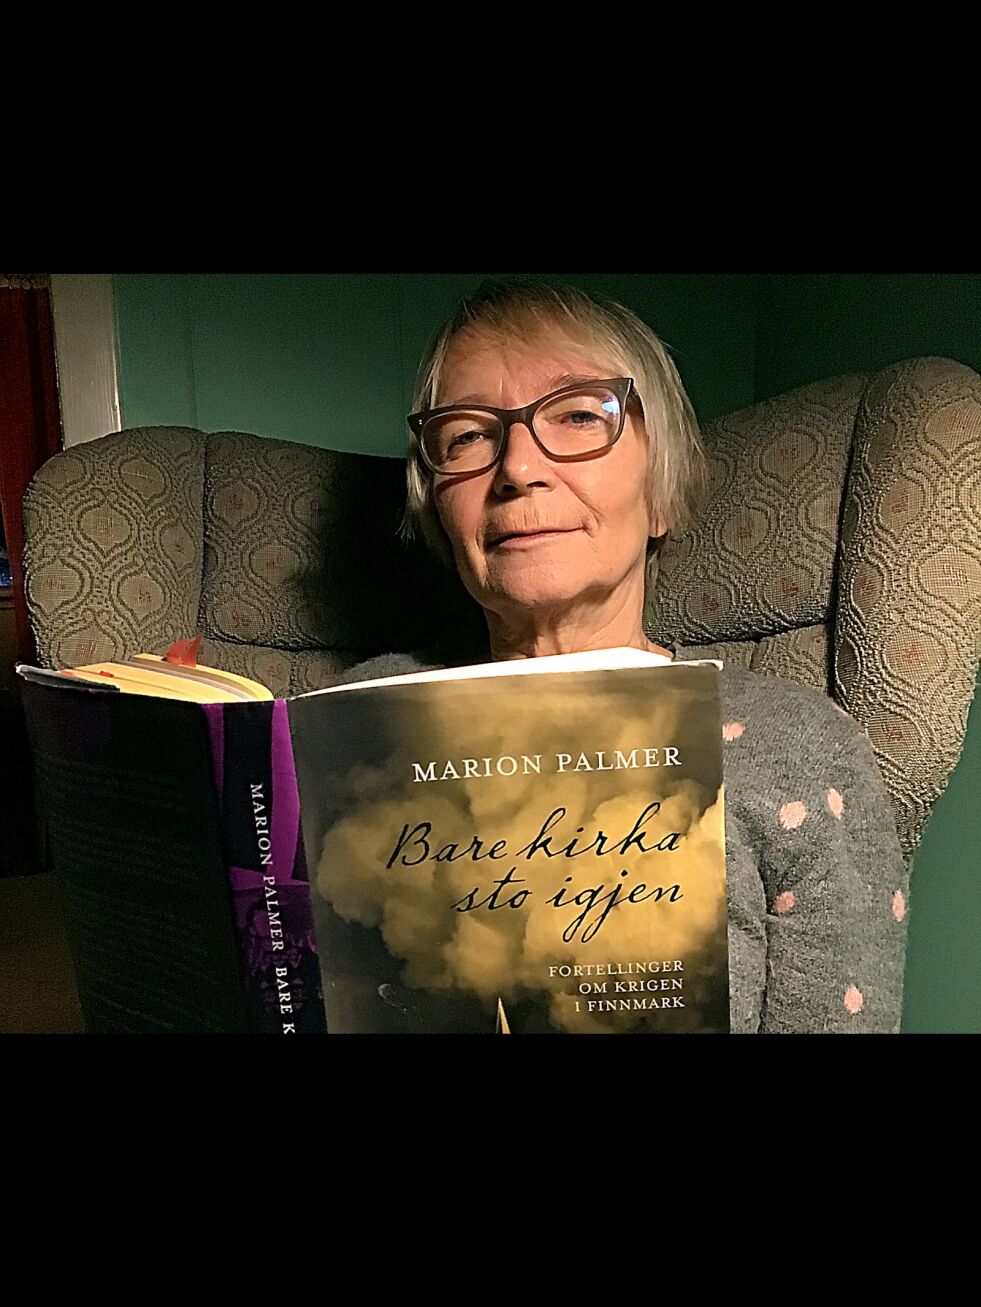 Marion Palmer med sin bok om fortellinger fra krigen.
 Foto: Jan T. Larsjord